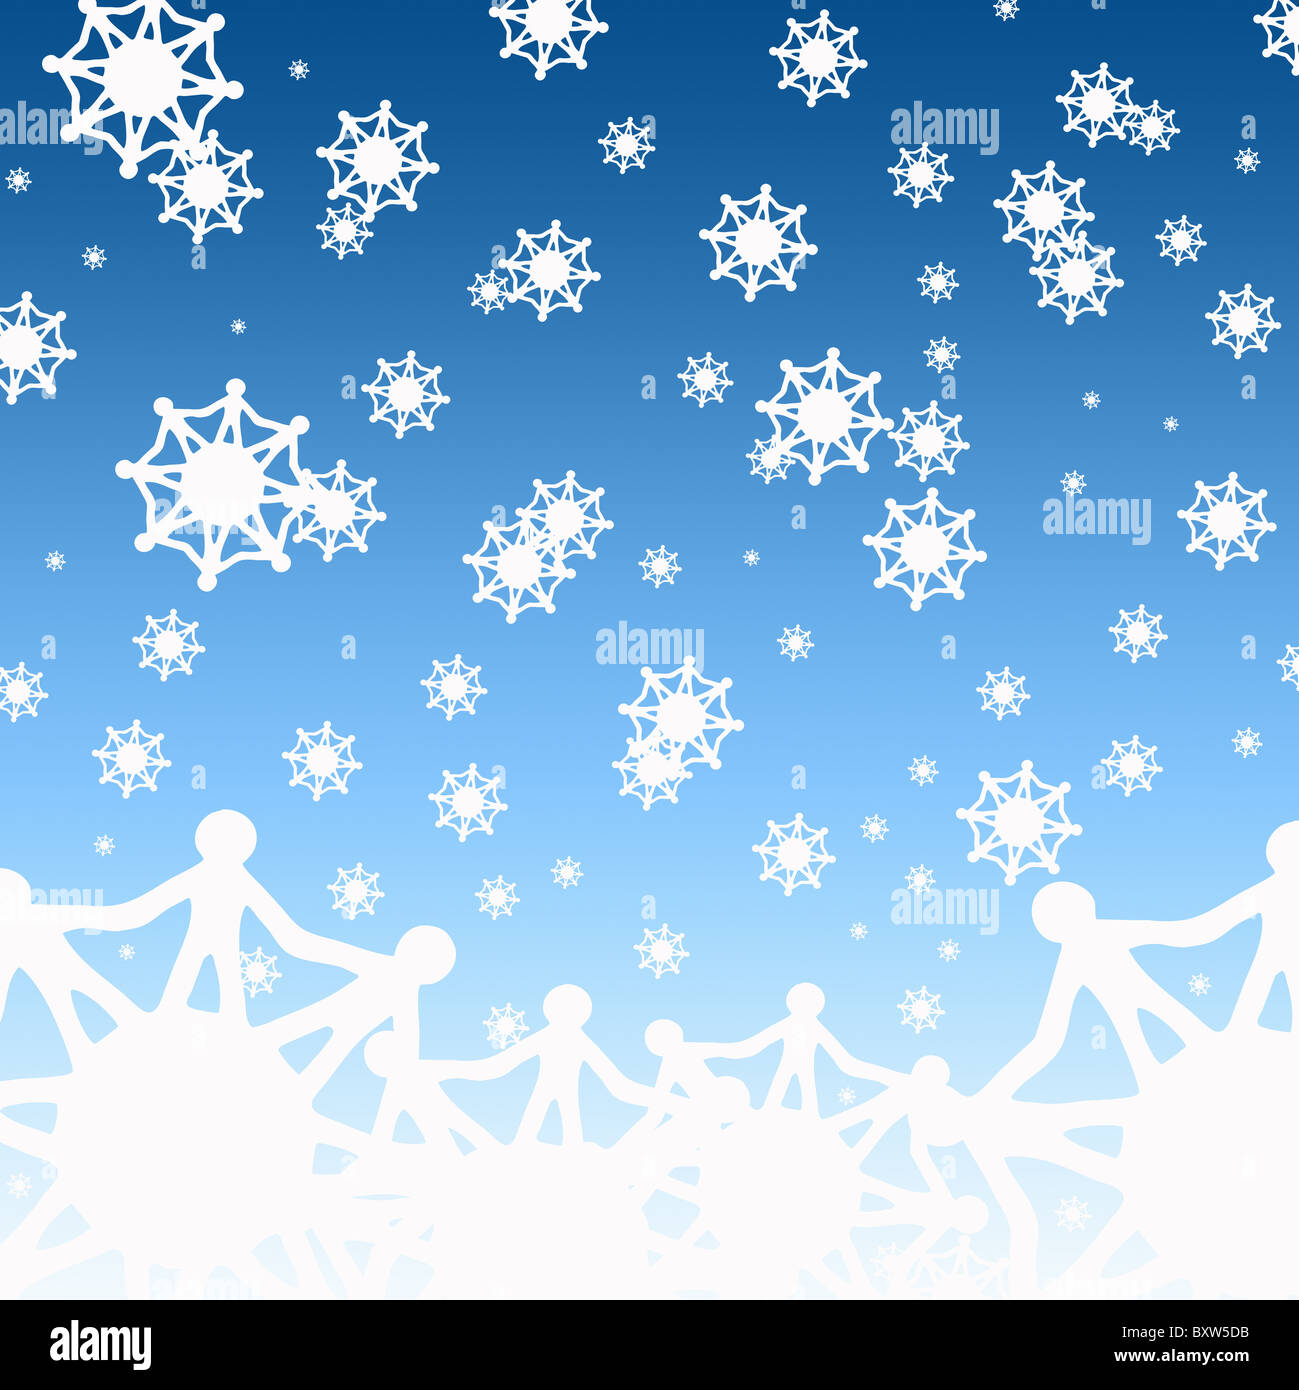 Eine Welt Schneeflocken Weihnachtskarte Konzept Stockfoto